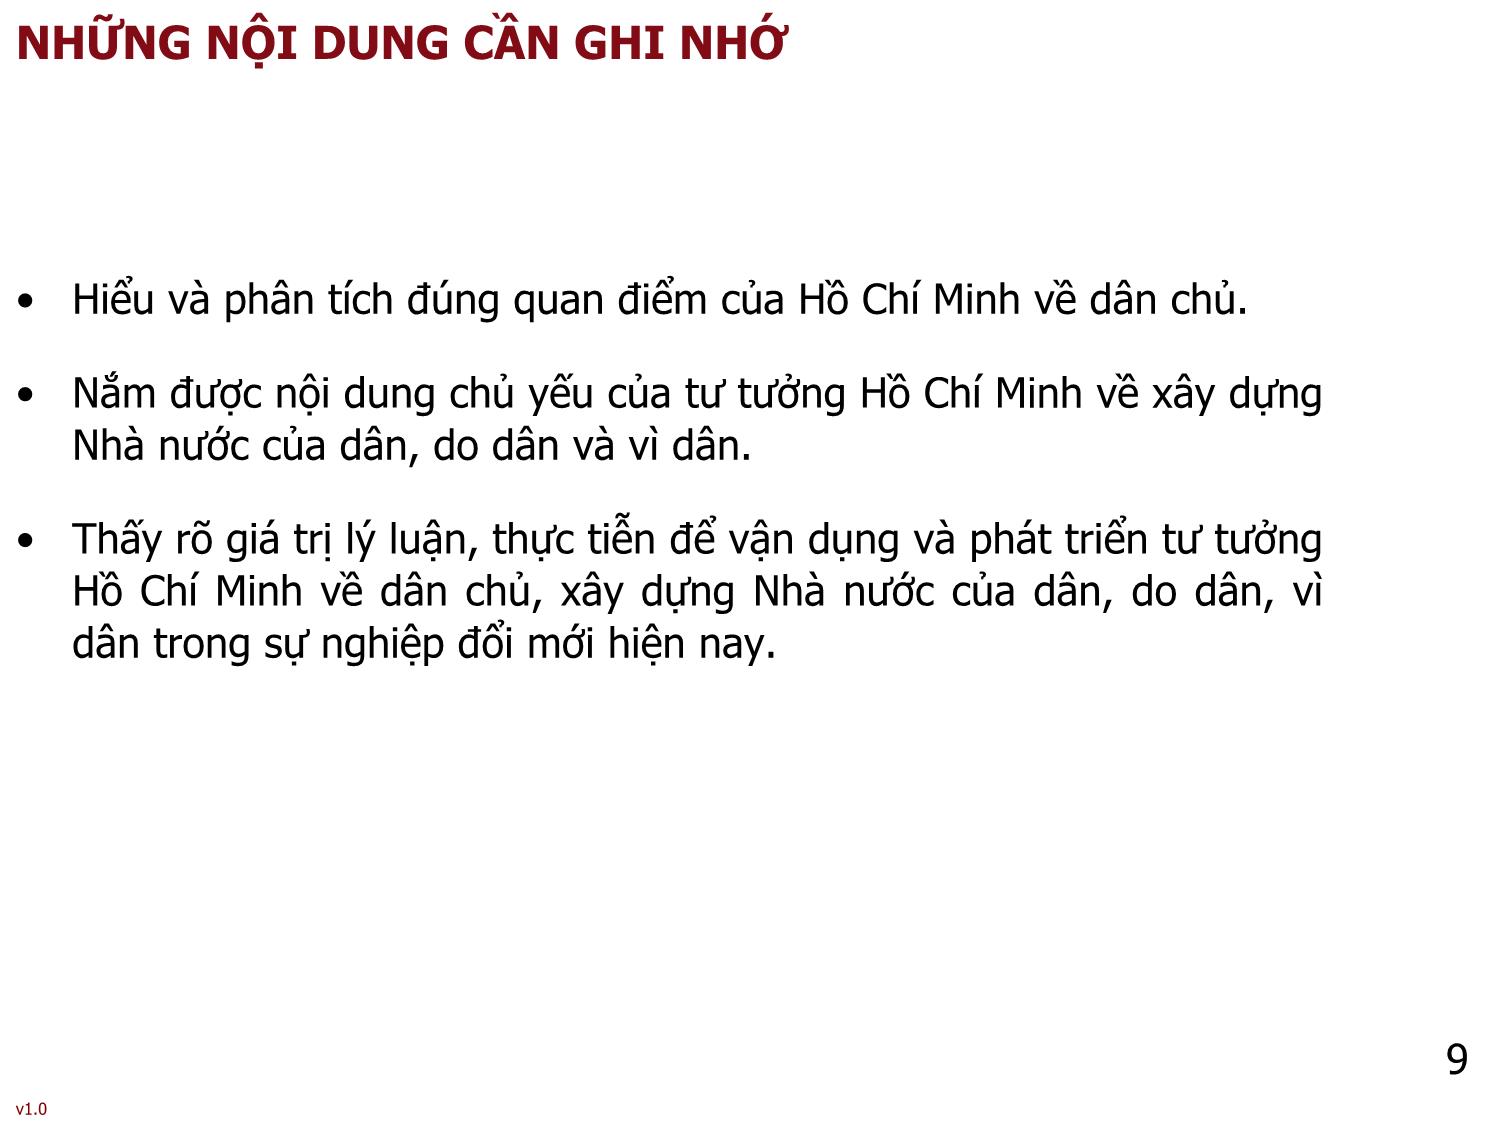 Bài giảng Tư tưởng Hồ Chí Minh - Bài 6: Tư tưởng Hồ Chí Minh về dân chủ và xây dựng nhà nước của dân, do dân, vì dân - Phạm Ngọc Anh trang 9